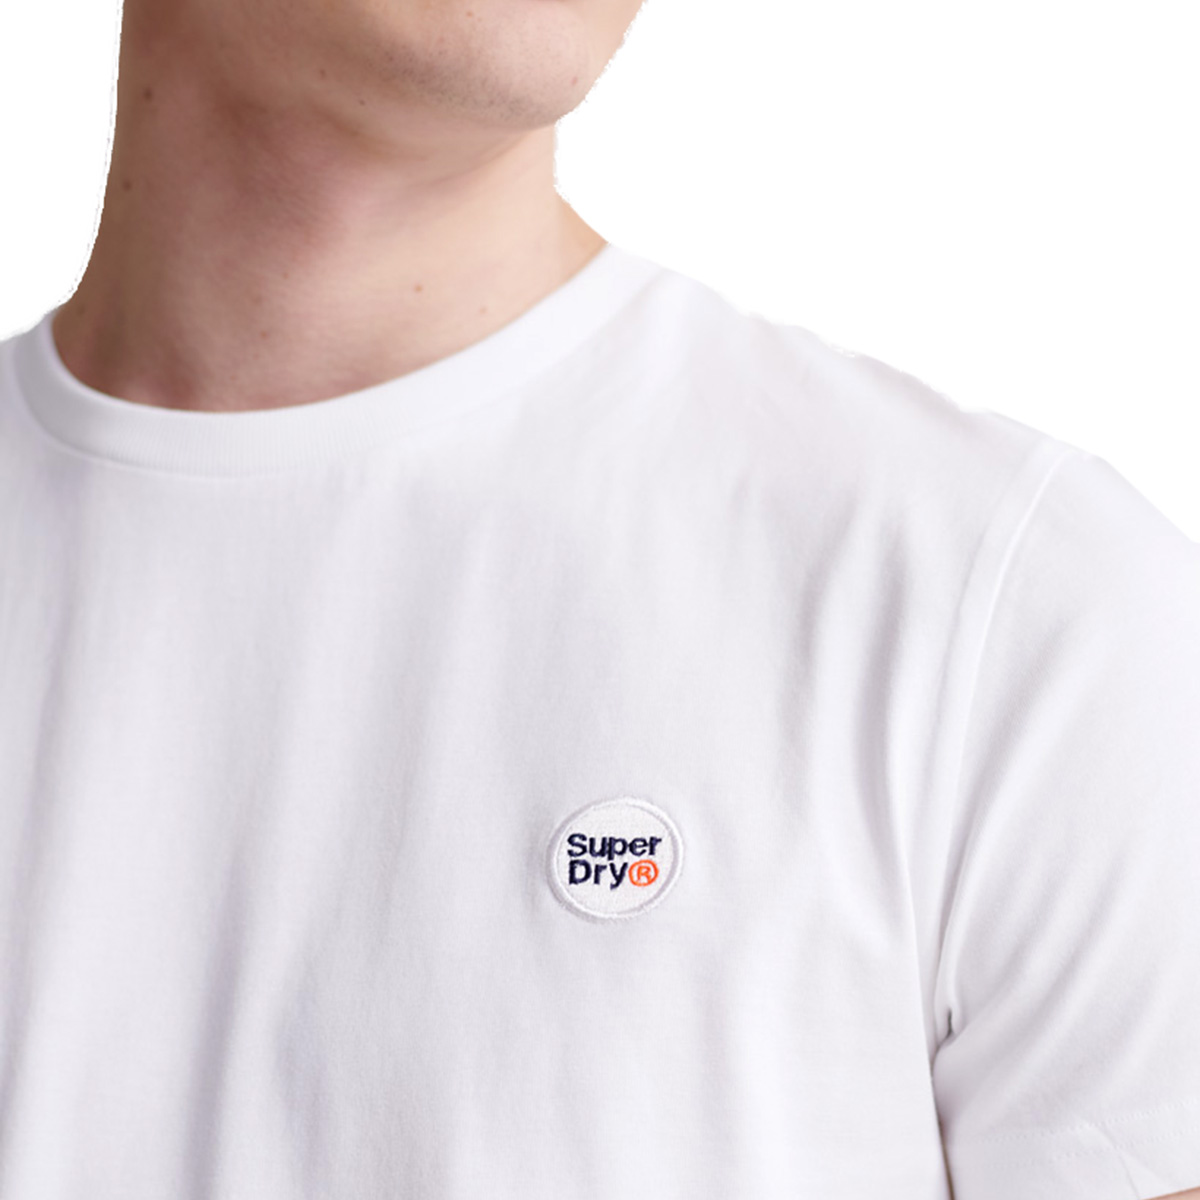 Superdry Herren Collective Tee T-Shirt Short Sleeve Shirt Hemd M1010092A Weiß